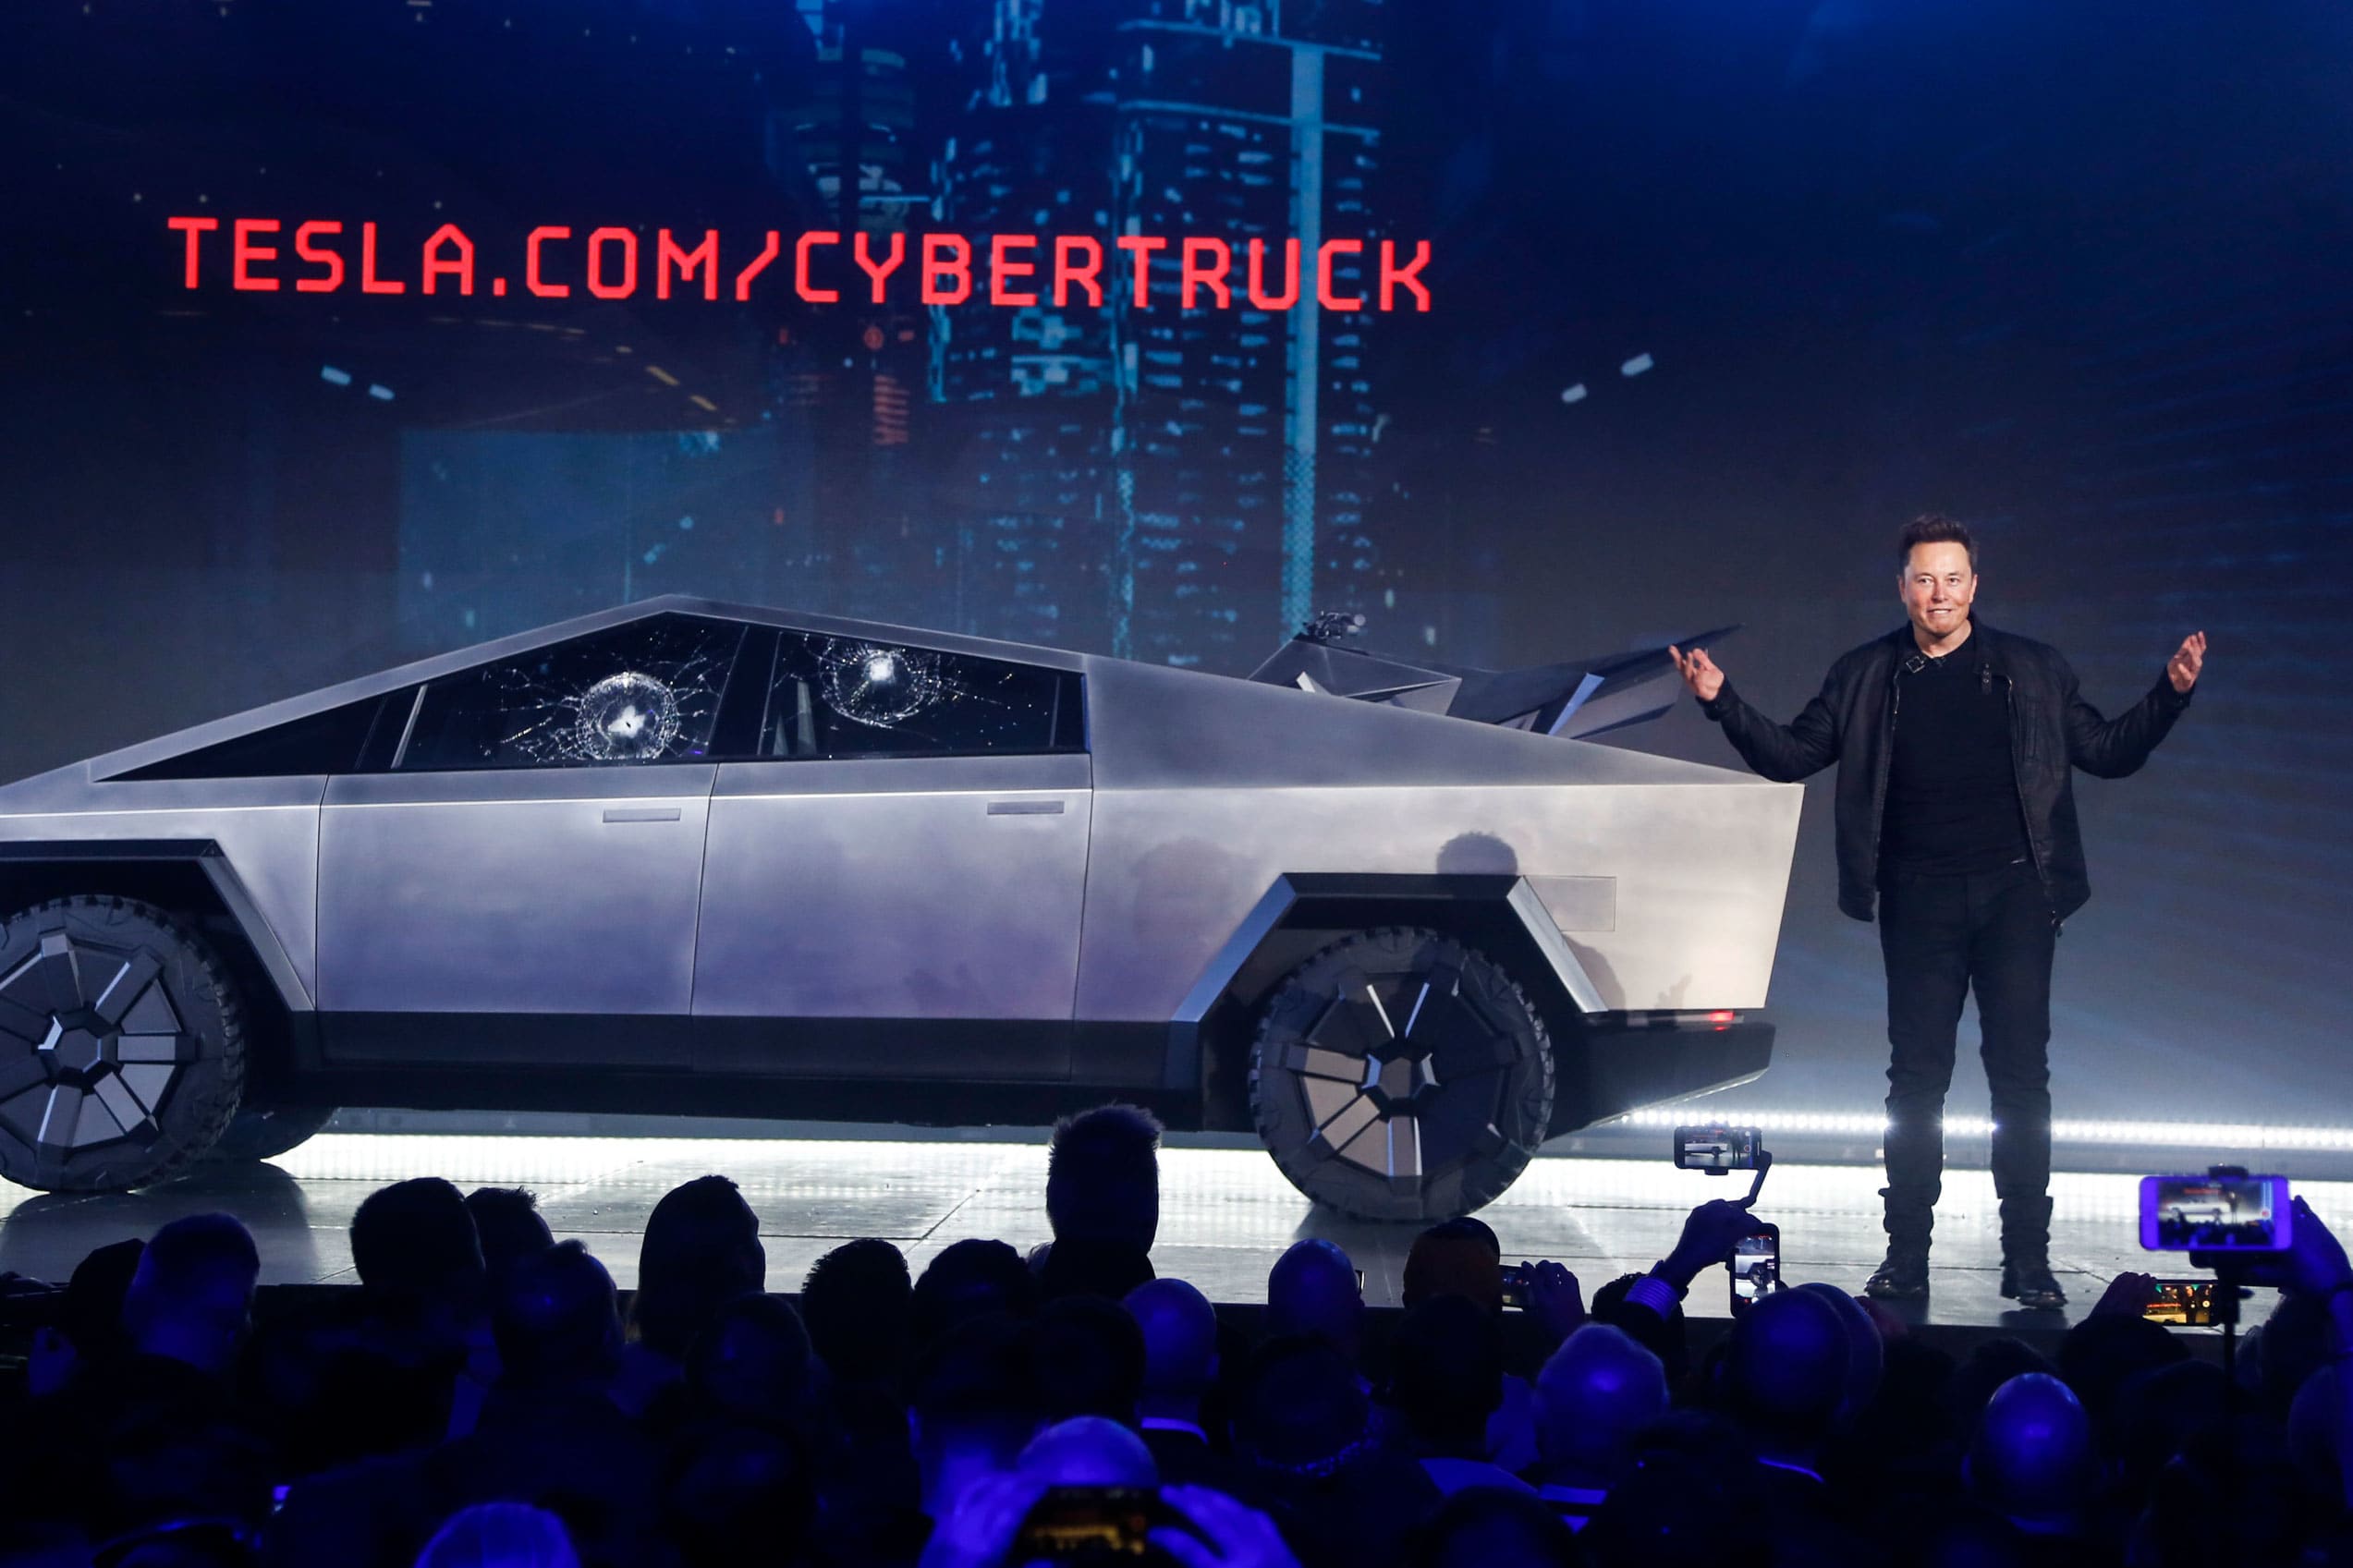 Elon Musk unveils Blade Runner-inspired Cybertruck